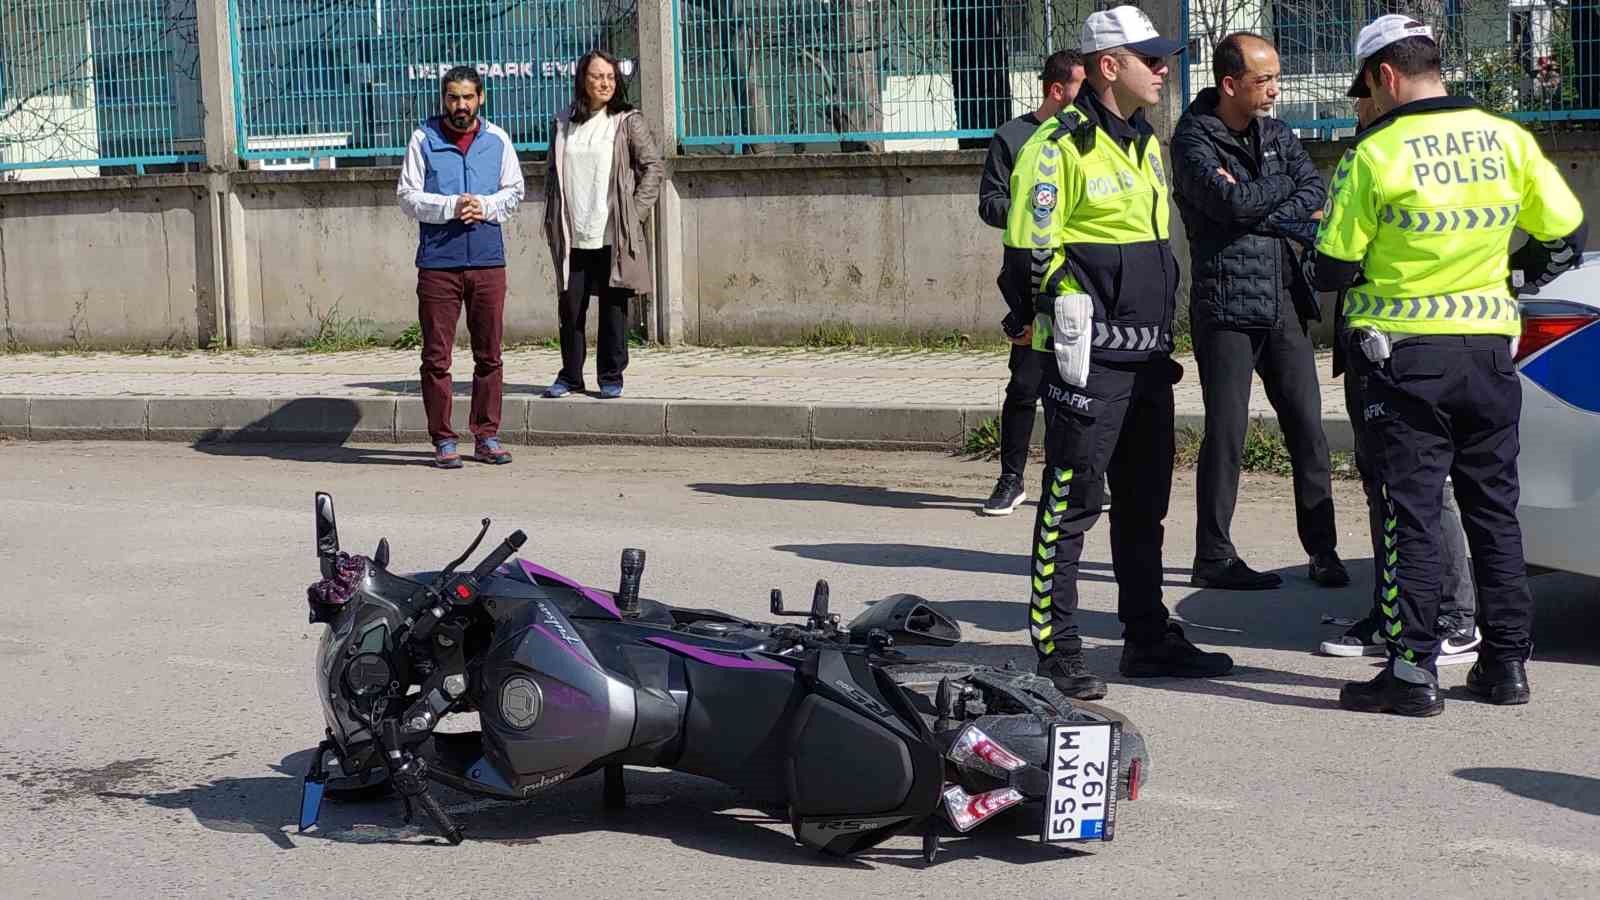 Samsun’da motosiklet ile otomobil çarpıştı: 1 yaralı
